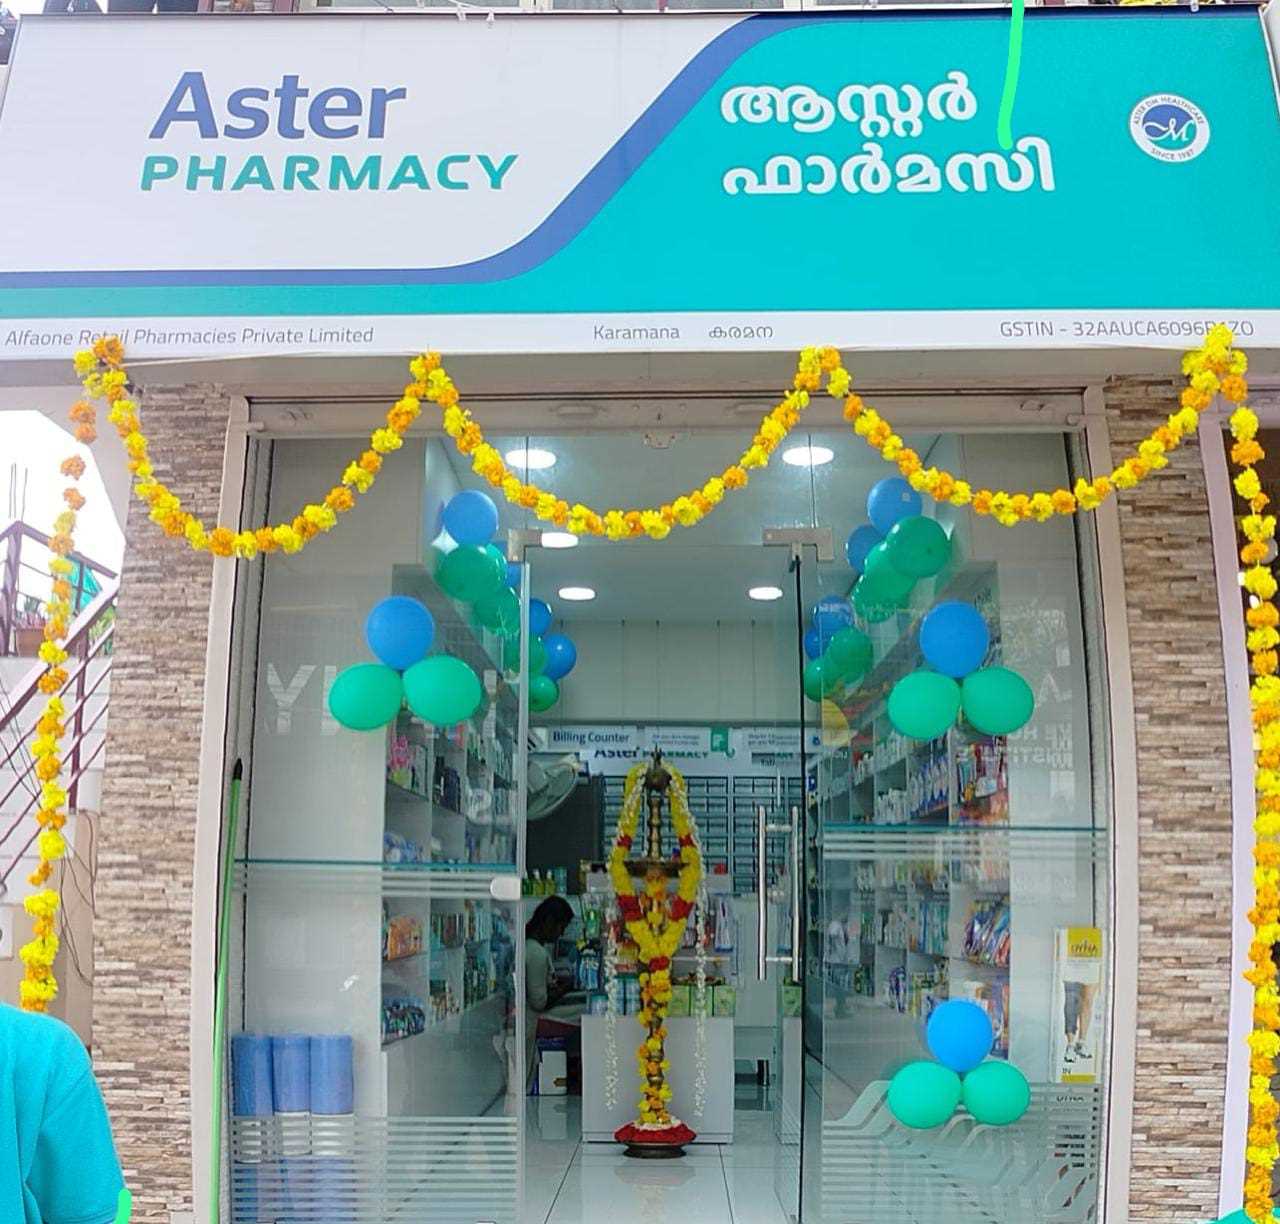 Aster Pharmacy in Karamana, Trivandrum